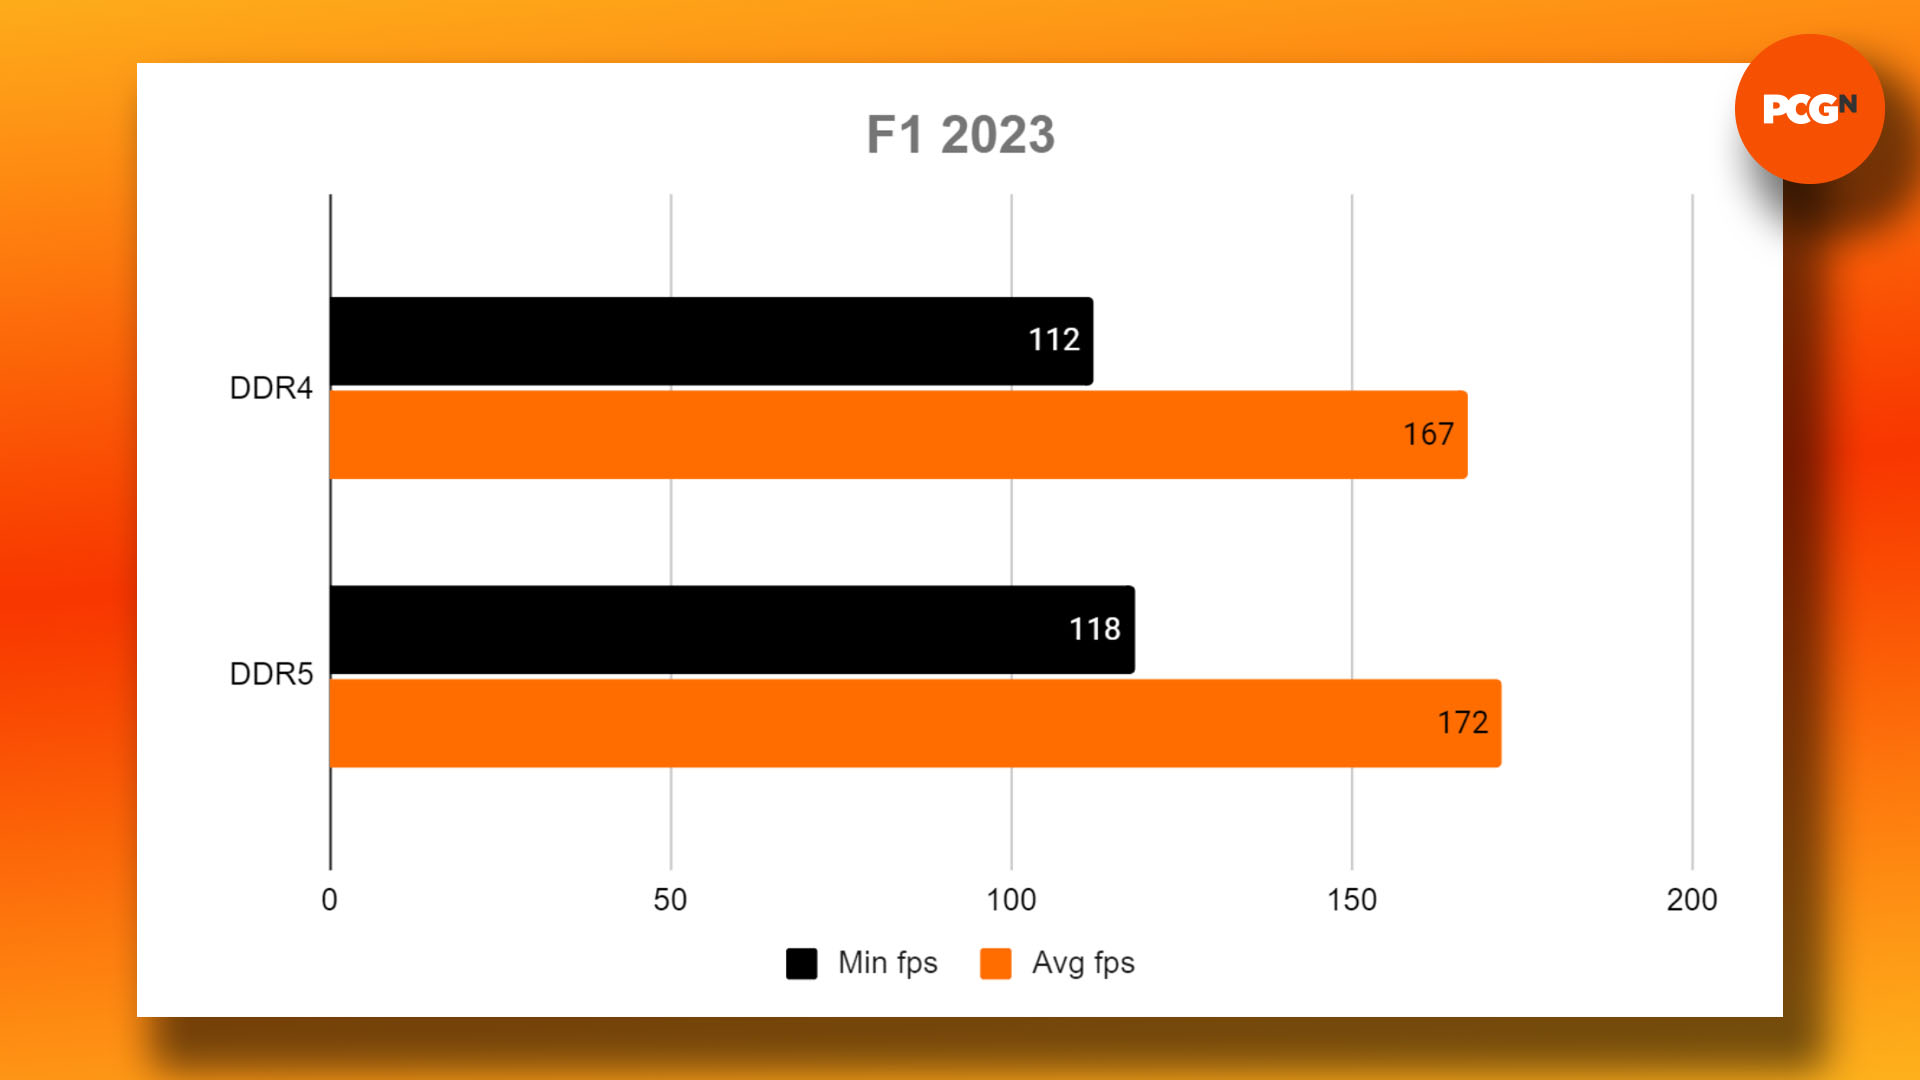 DDR4 vs DDR5 - oyun için hangi RAM satın alınmalı: F1 2023 kıyaslama sonuçları grafiği